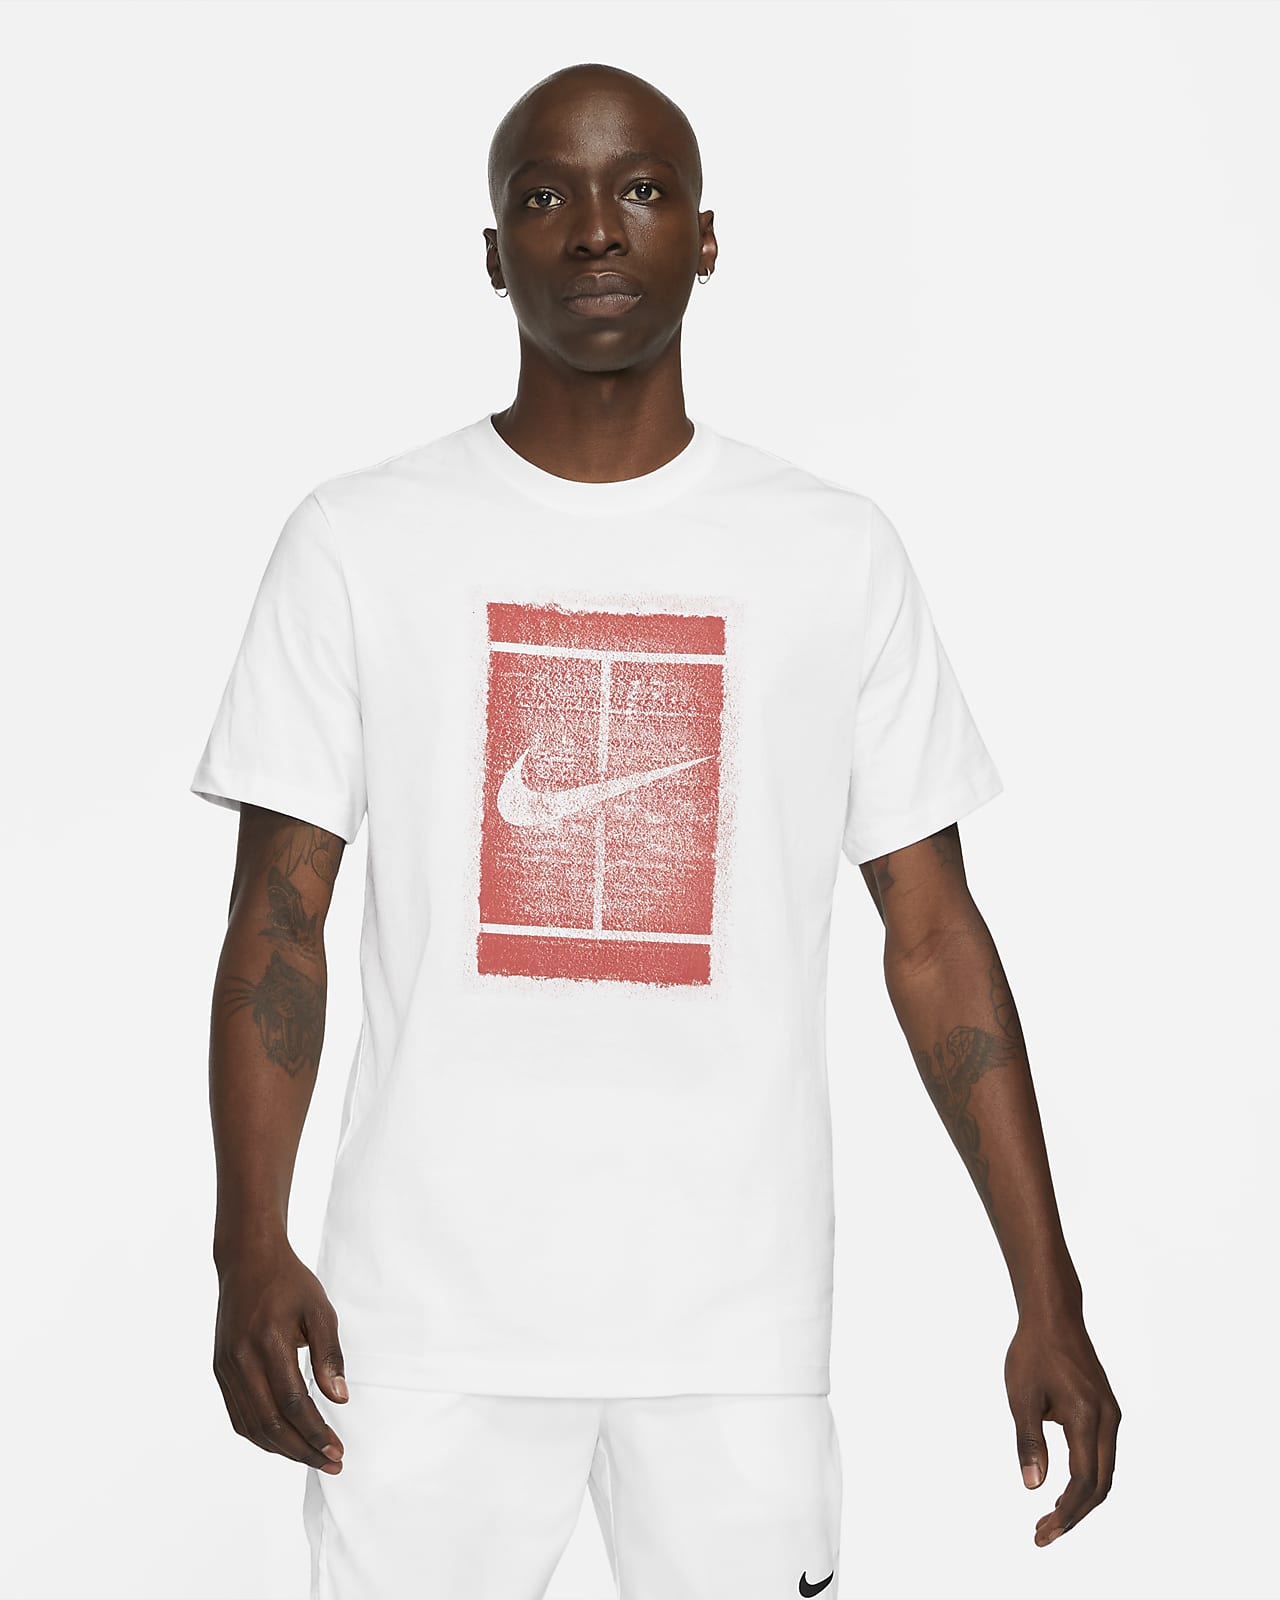 Nikecourt T Shirt Factory Sale, 50% - aveclumiere.com